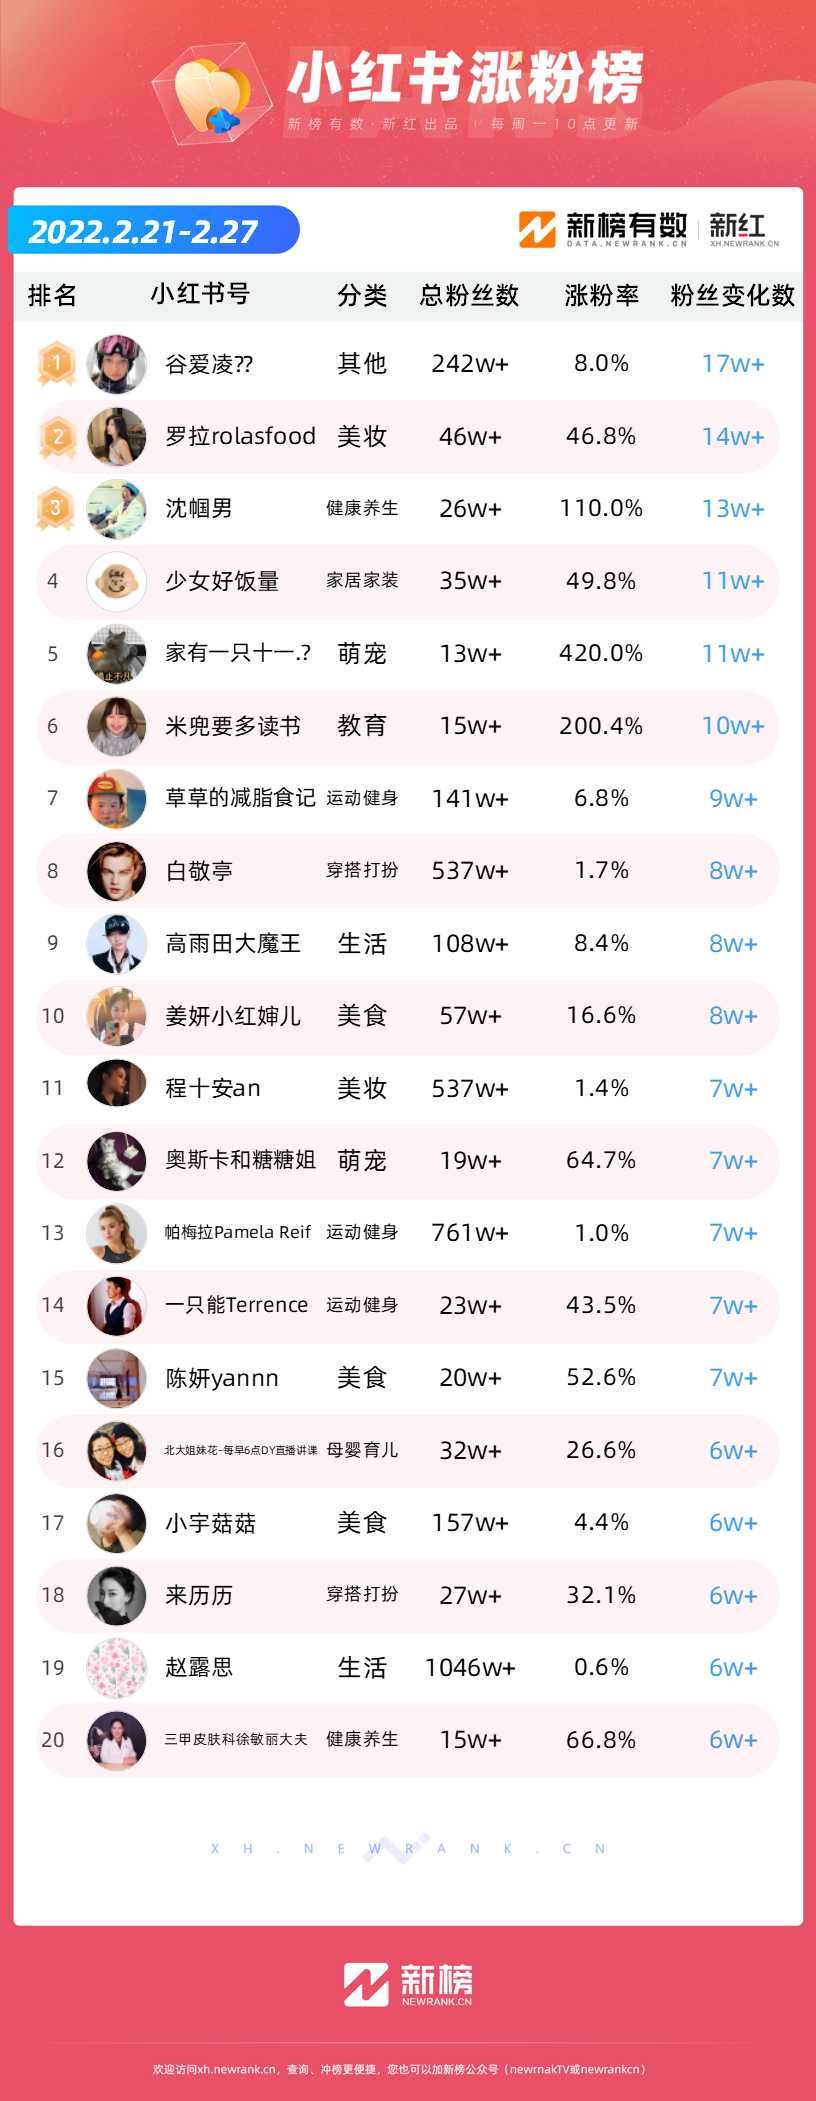 《半熟恋人》罗拉<a href='https://www.zhouxiaohui.cn/duanshipin/
' target='_blank'>小红书</a>一周涨粉17万；“小王Albert”一周B站涨粉超33万 | 涨粉周榜-第2张图片-周小辉博客